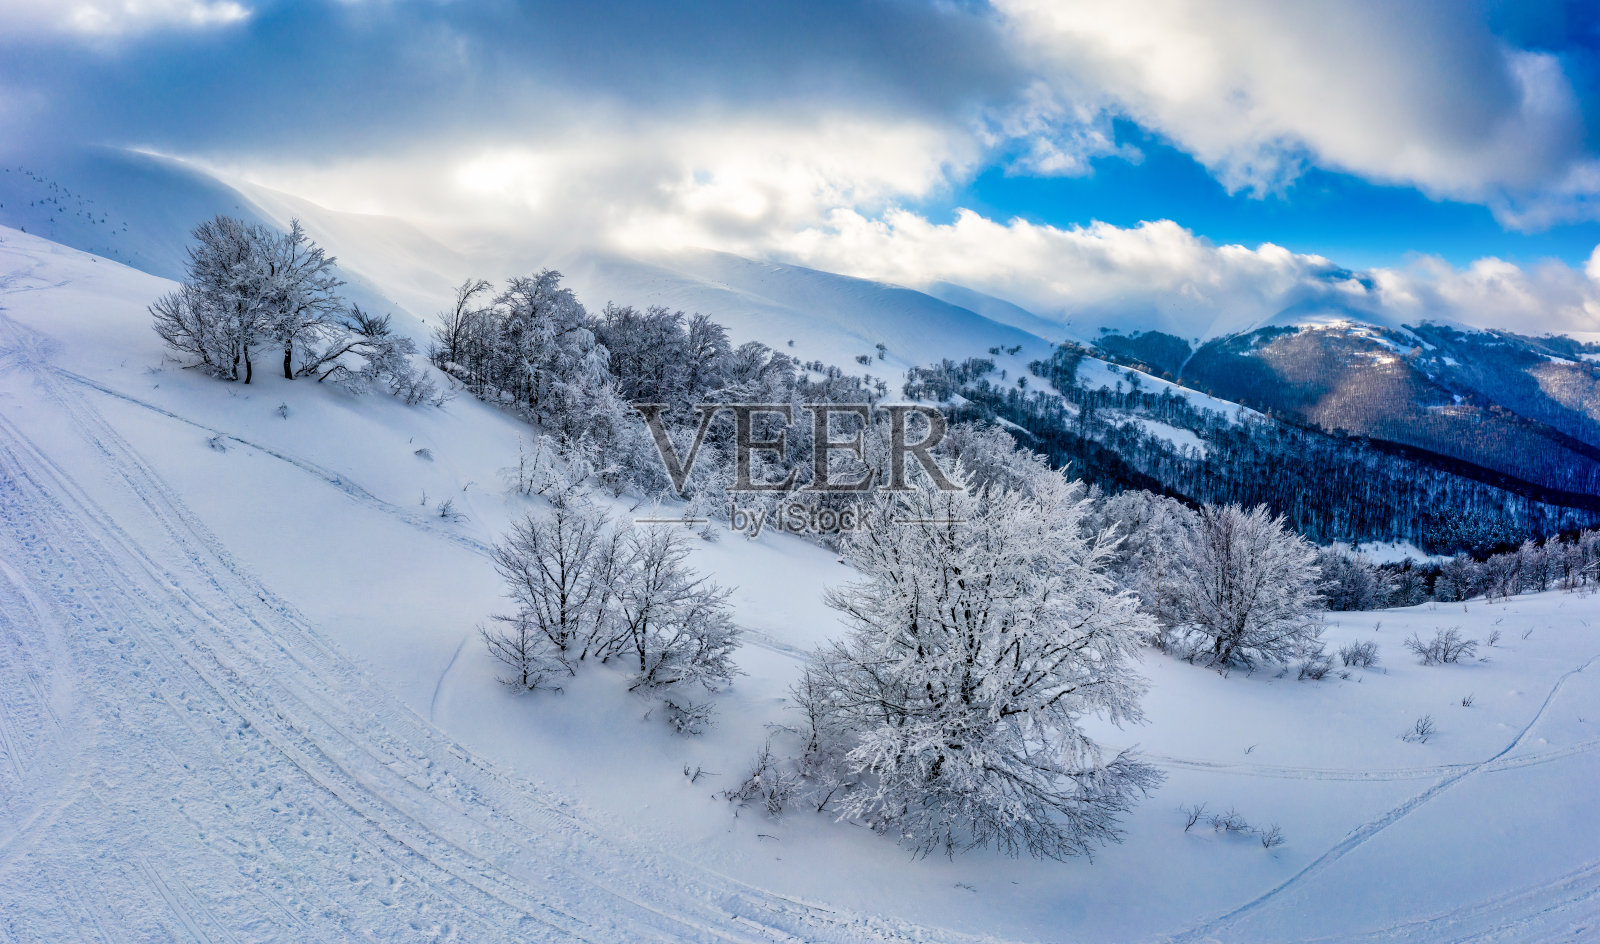 云杉被雪覆盖的壮观景象照片摄影图片